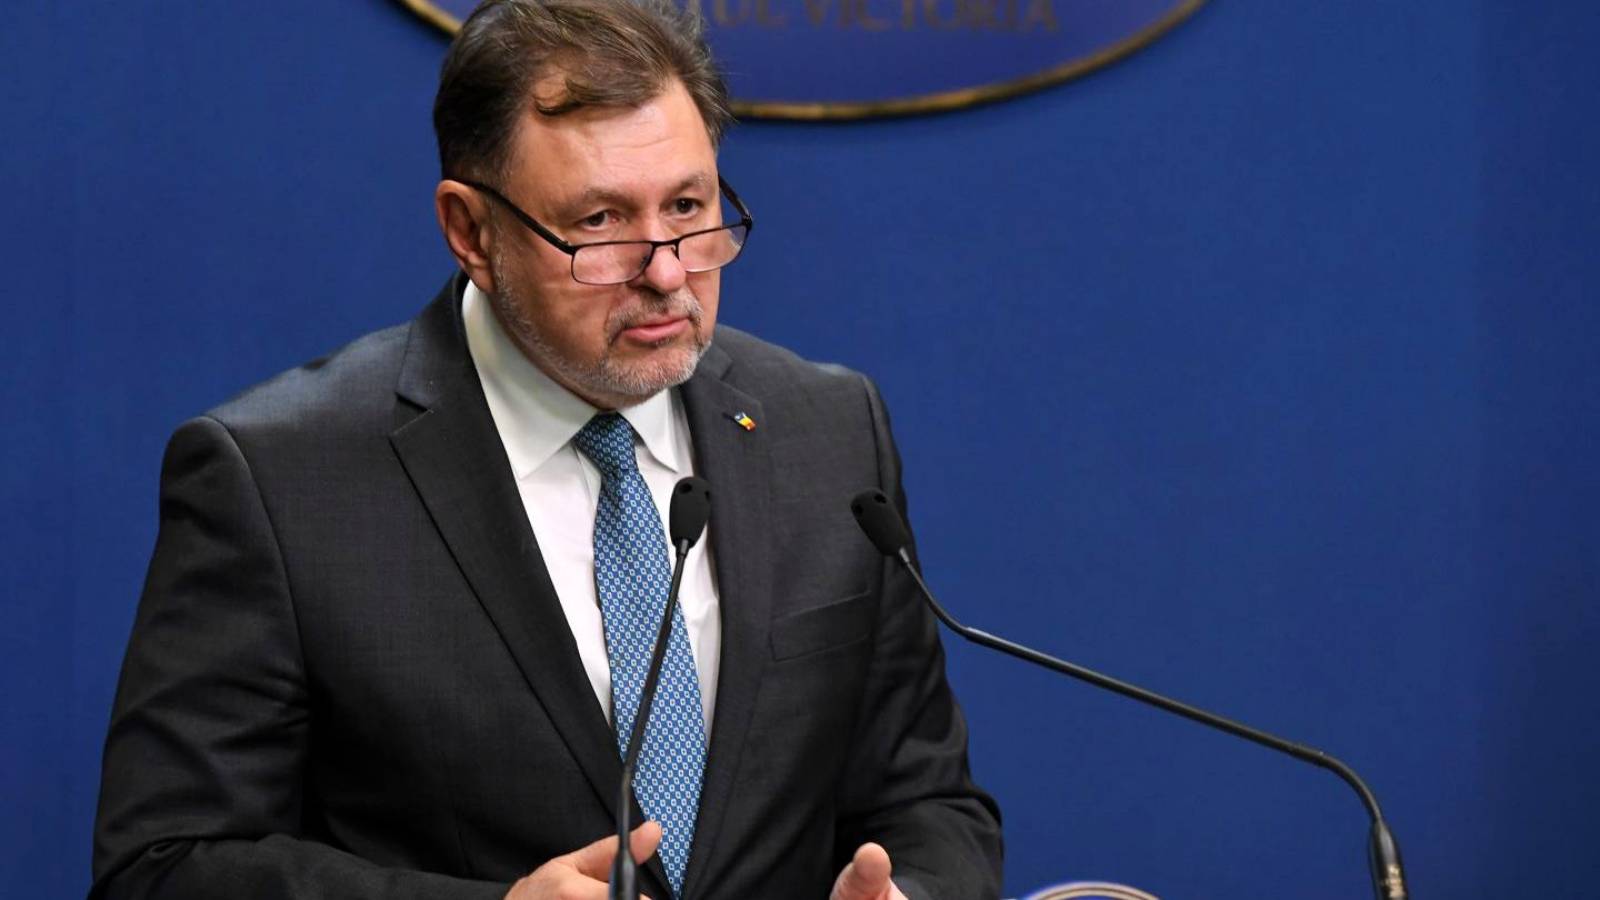 Il Ministro della Sanità ha annunciato ufficialmente l'ultima volta alla Romania una decisione importante